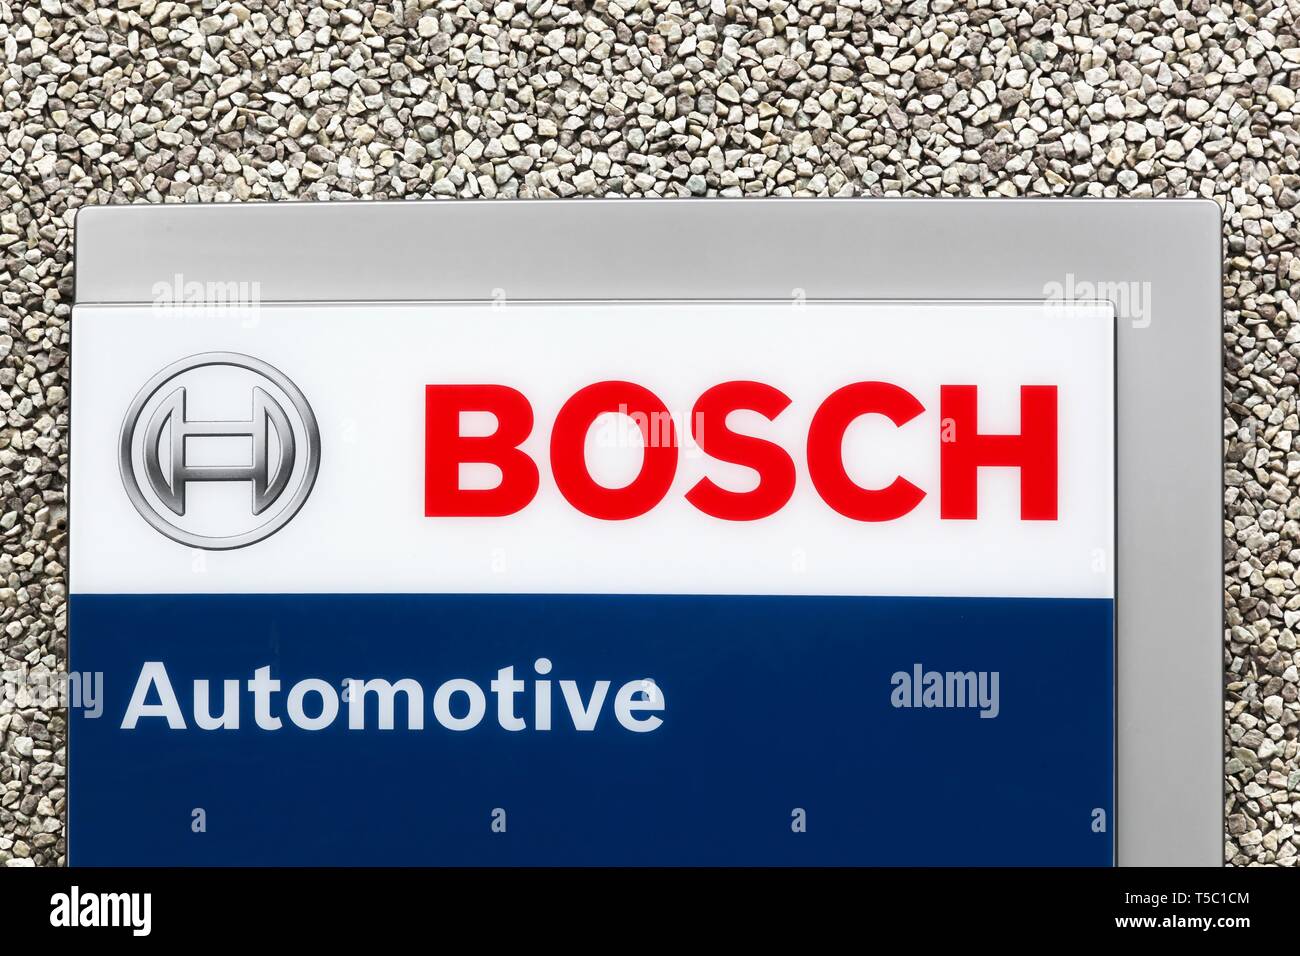 Skejby, Dänemark - 10. Mai 2018: Bosch Automotive Logo auf eine Wand. Bosch  Car Service Garagen bieten Fahrzeug Wartung, Reparatur und Diagnose  Stockfotografie - Alamy